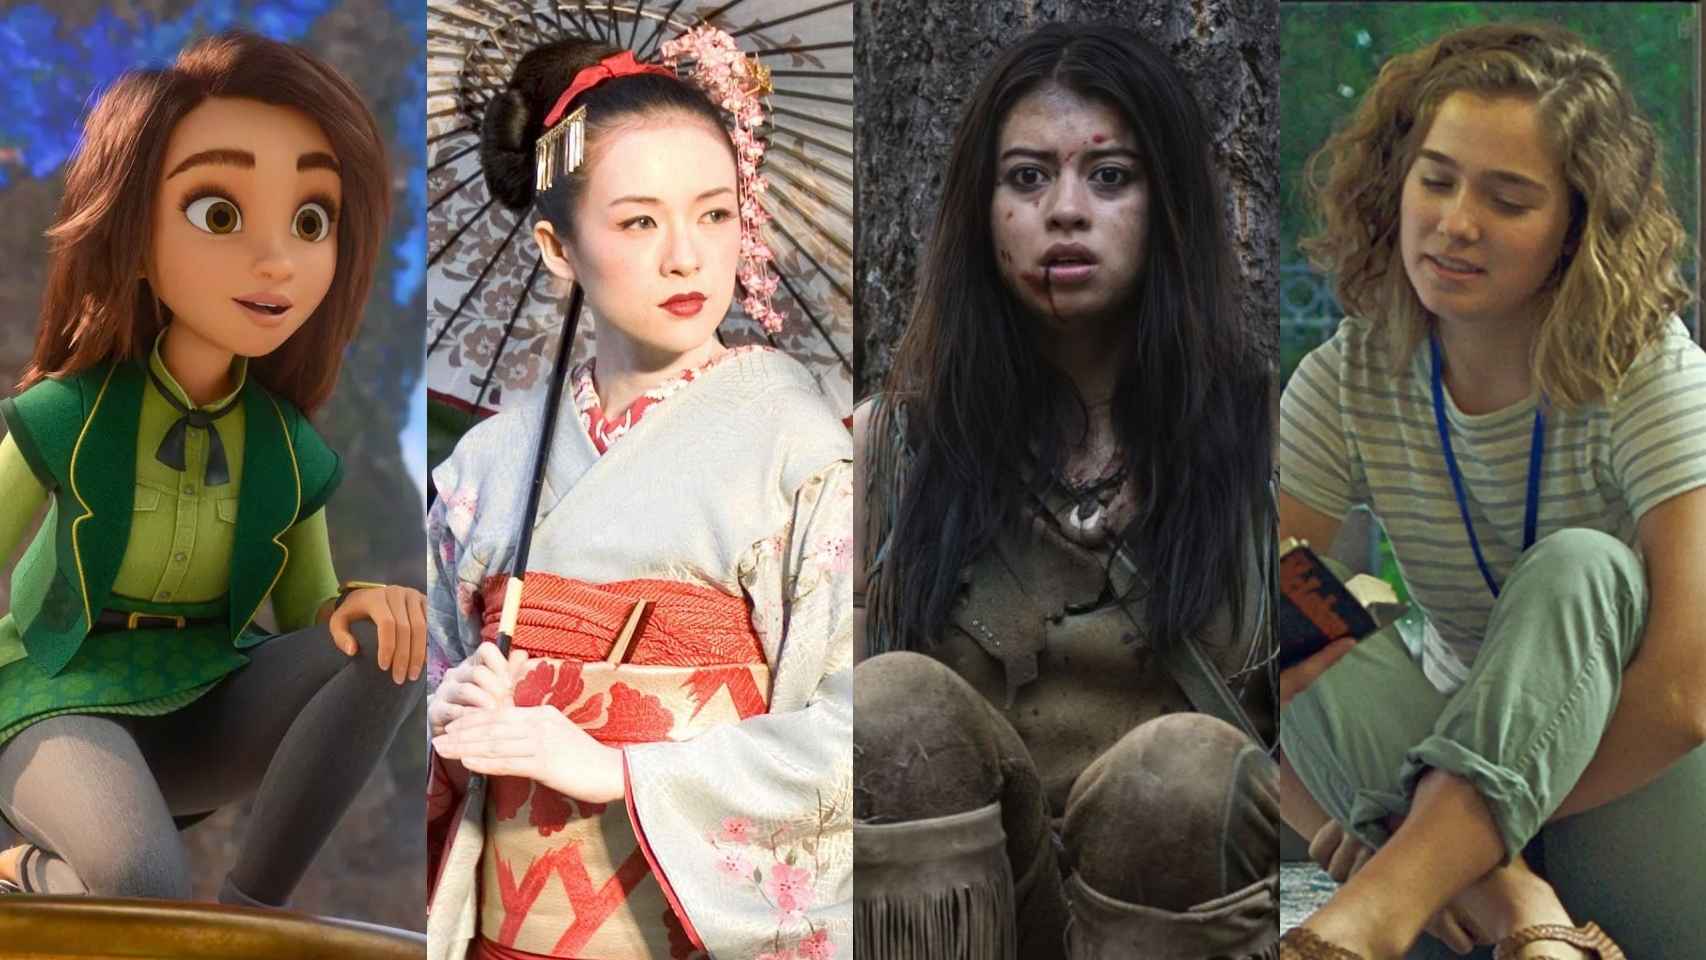 'Luck', 'Memorias de una geisha', 'Predator: La presa' y 'Columbus' son nuestras recomendaciones del fin de semana.